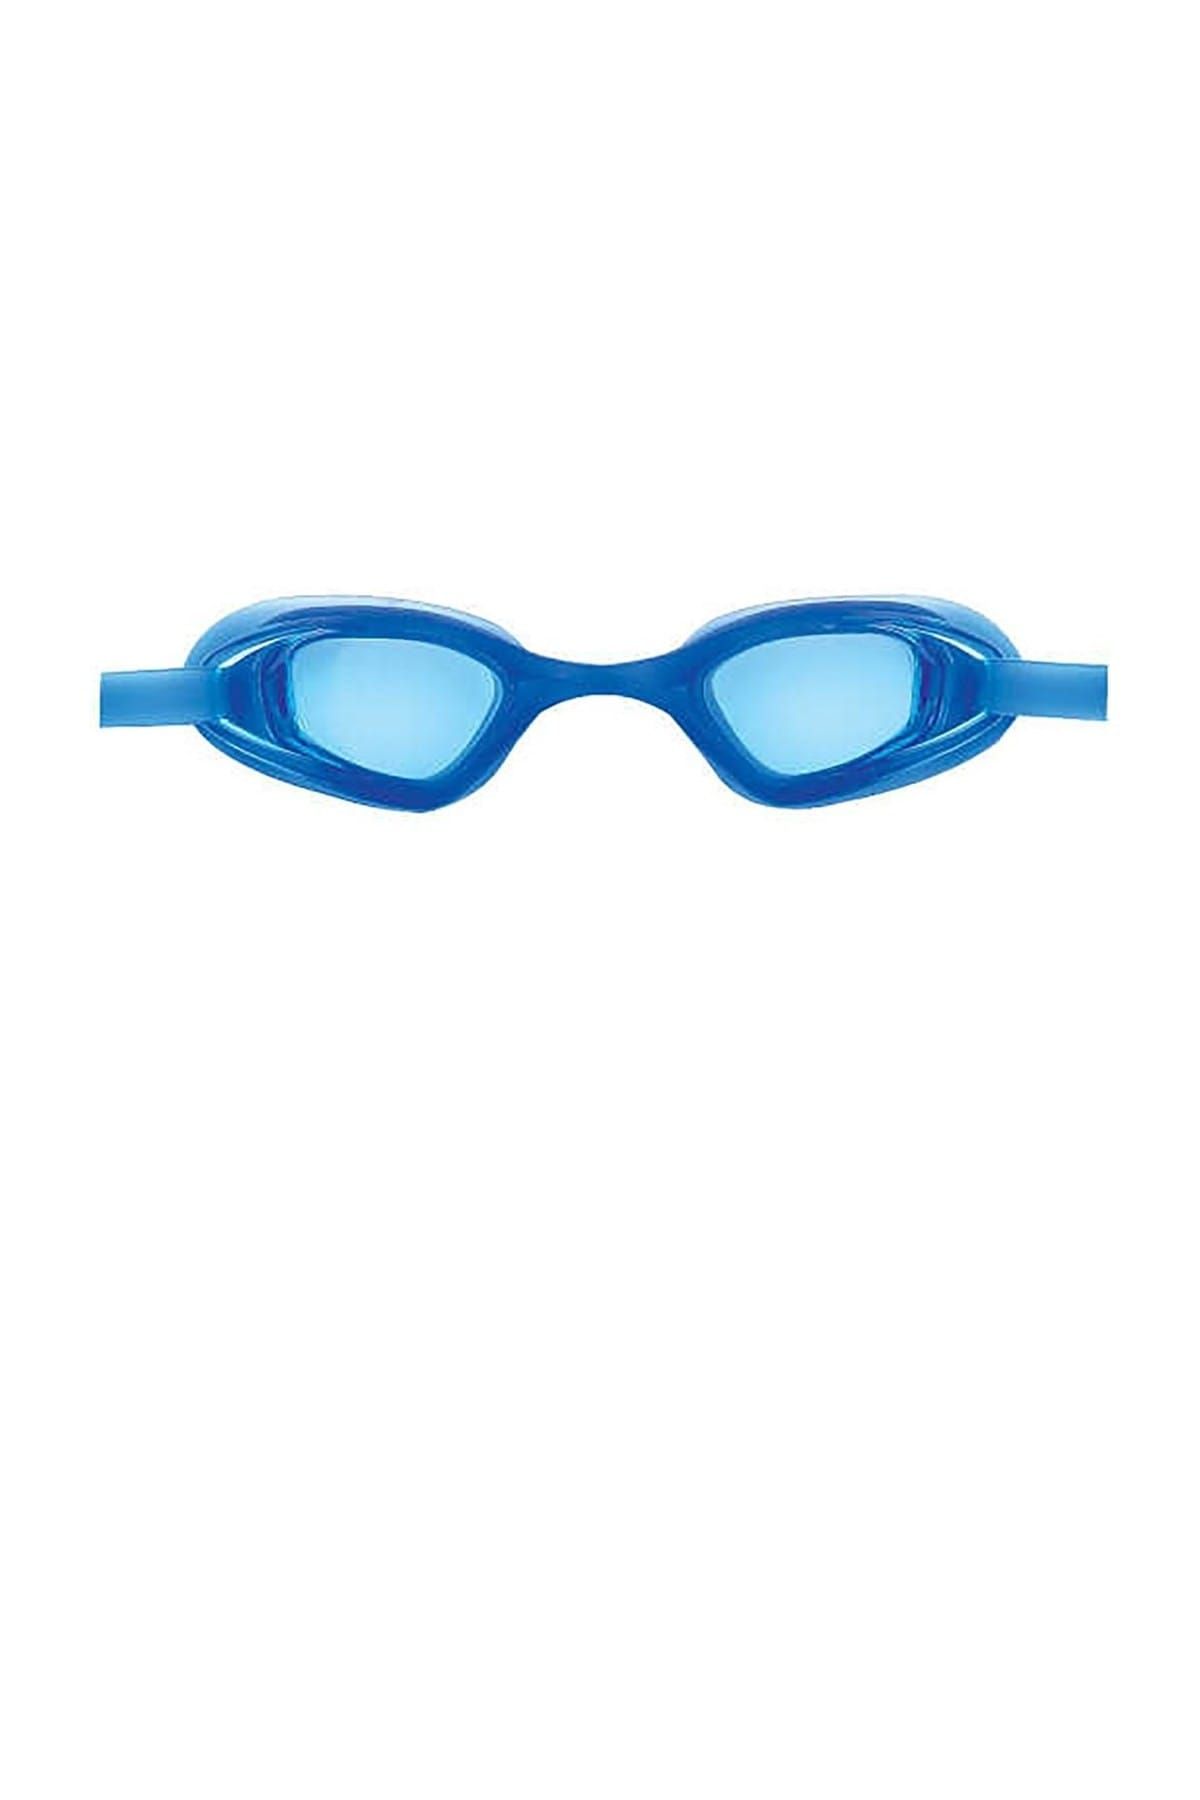 ALTIS ADG21 Mavi Yüzücü Gözlüğü (Adg21-05)